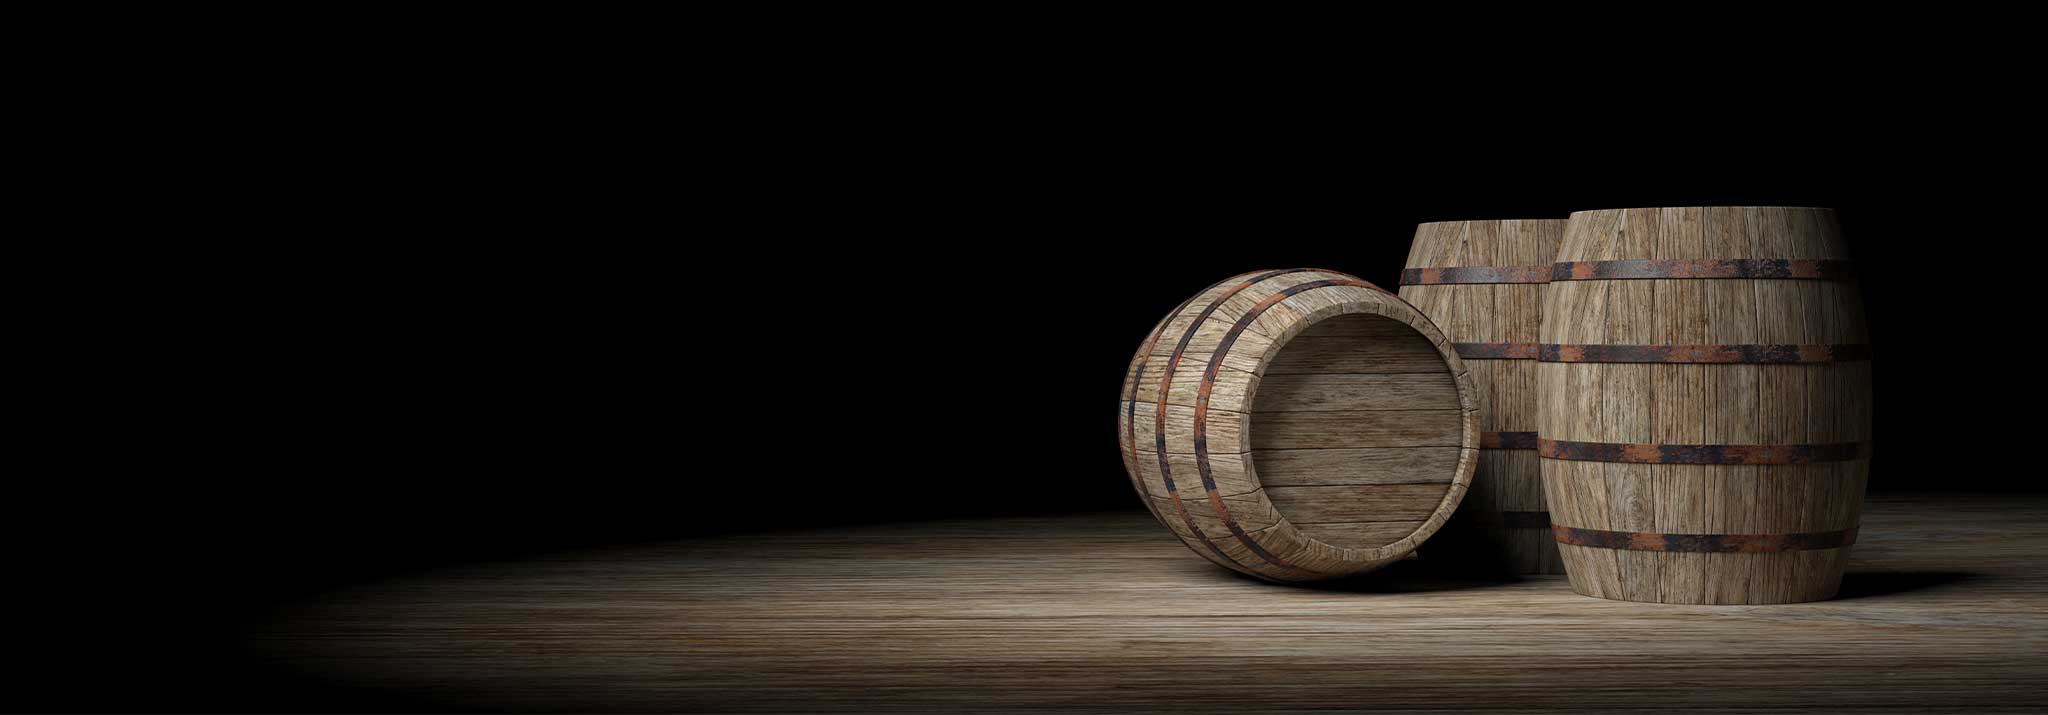 cepa-alta-wooden-barrels-crianza-roble-french-wines-ribera-del-duero-spain